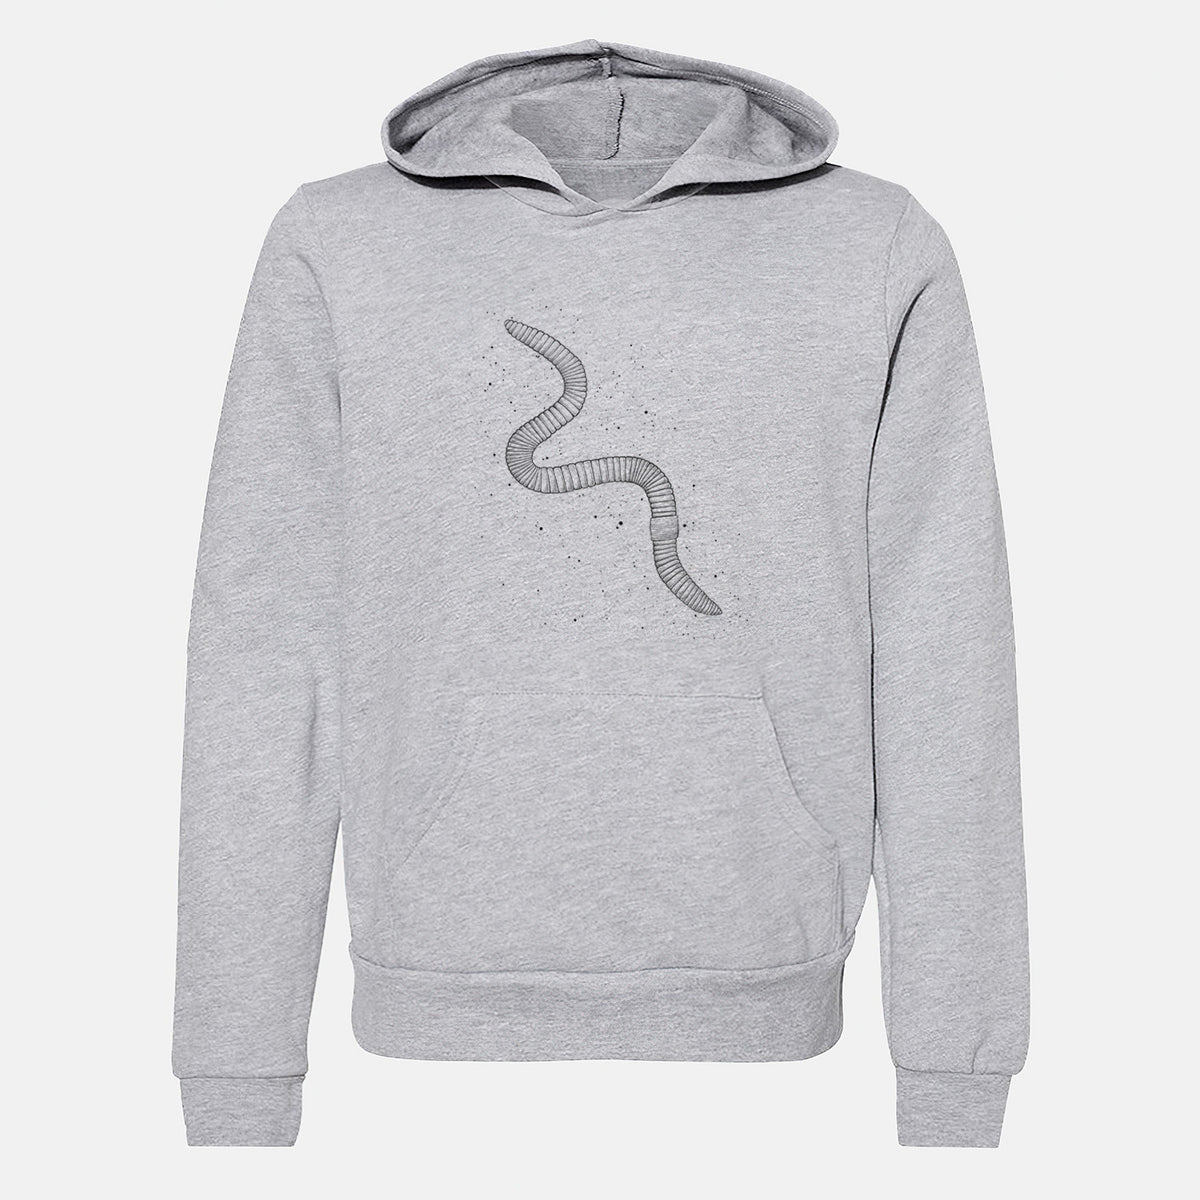 Common Earthworm - Nightcrawler - Lumbricus terrestris - Youth Hoodie Sweatshirt